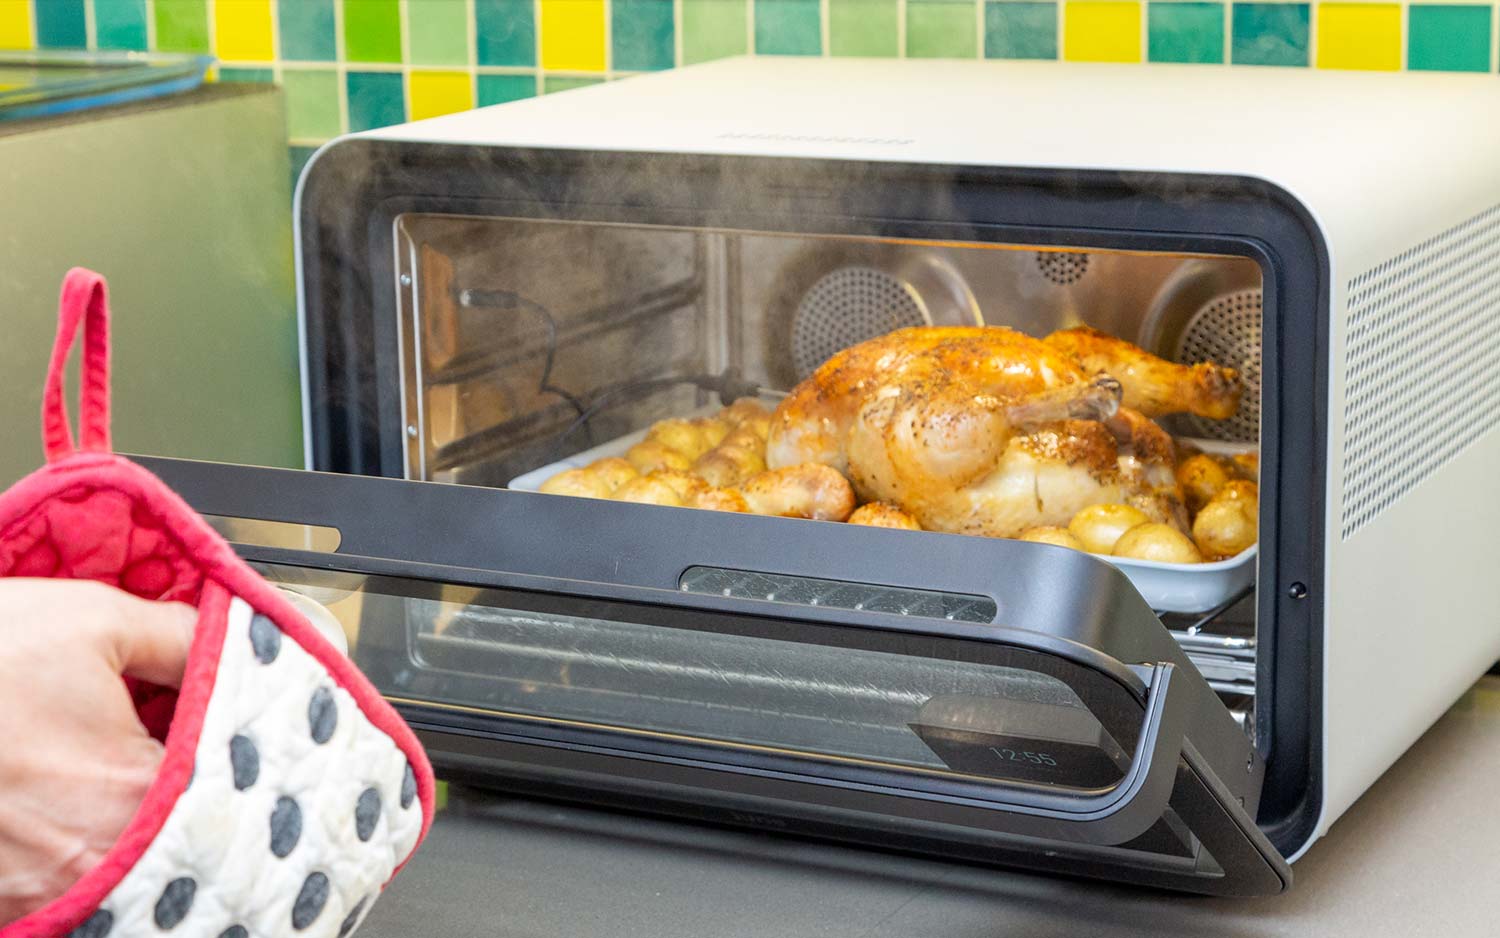 Best Smart Kitchen Devices 2020: Connected Kitchen Gadgets - Thrillist